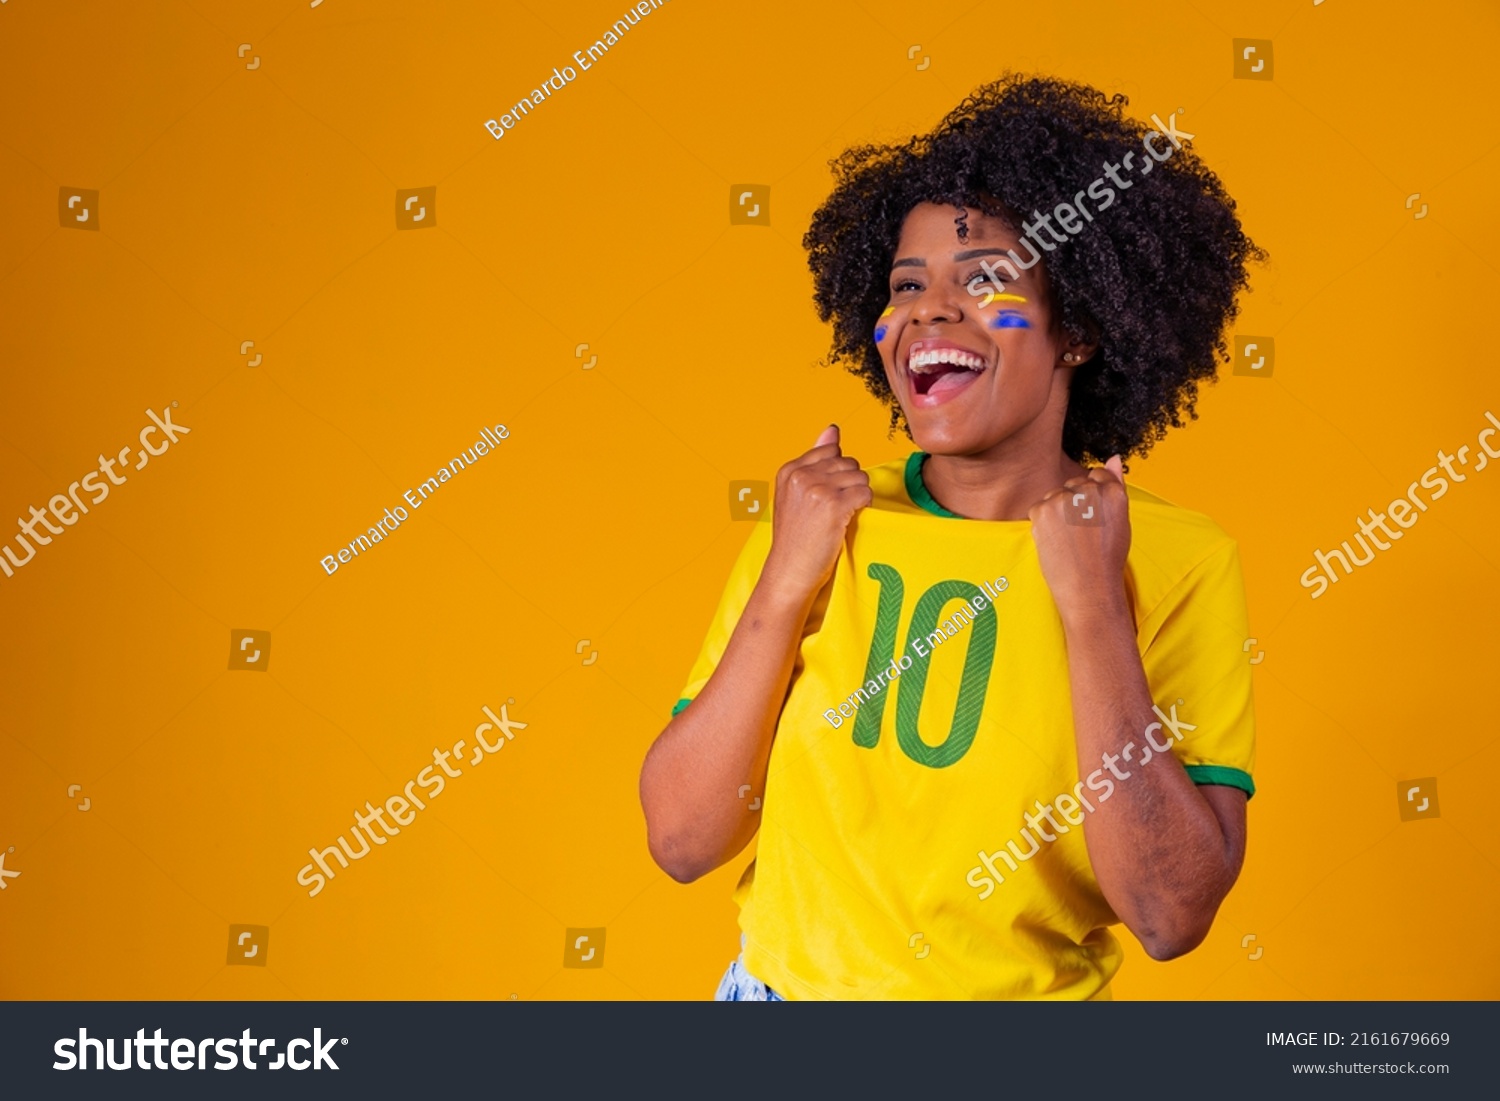 Brazilian fan. wearing Brazilian flag in a portrait, Brazilian fan celebrating football or soccer game on yellow background. Colors of Brazil.World Cup #2161679669